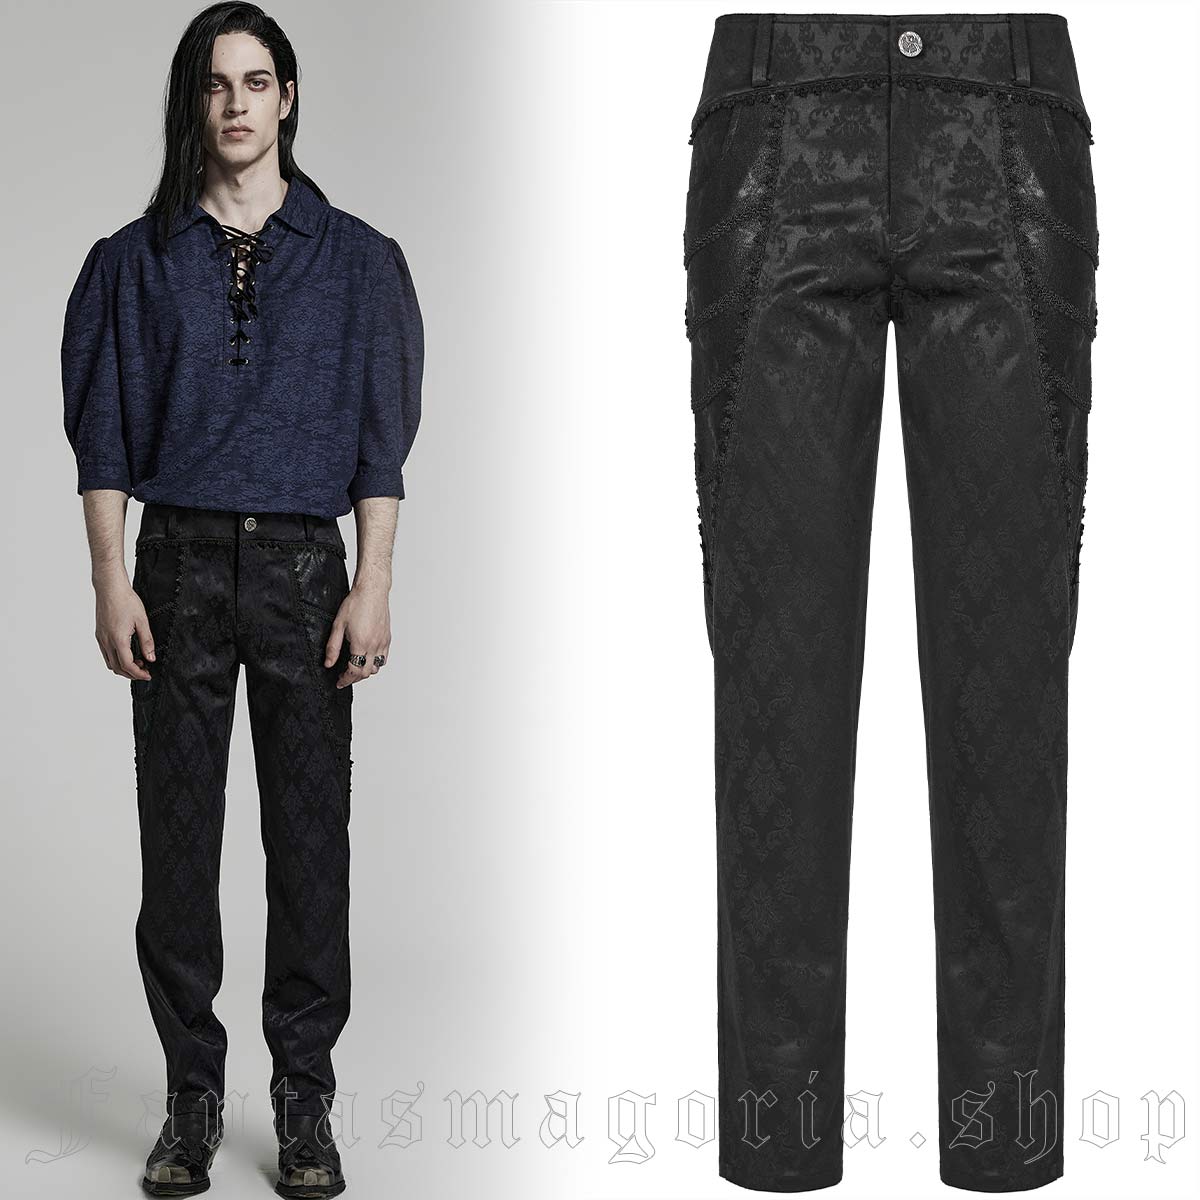 Men's Gothic black ornate jacquard slim fit trousers. - Punk Rave - WK-560/BK